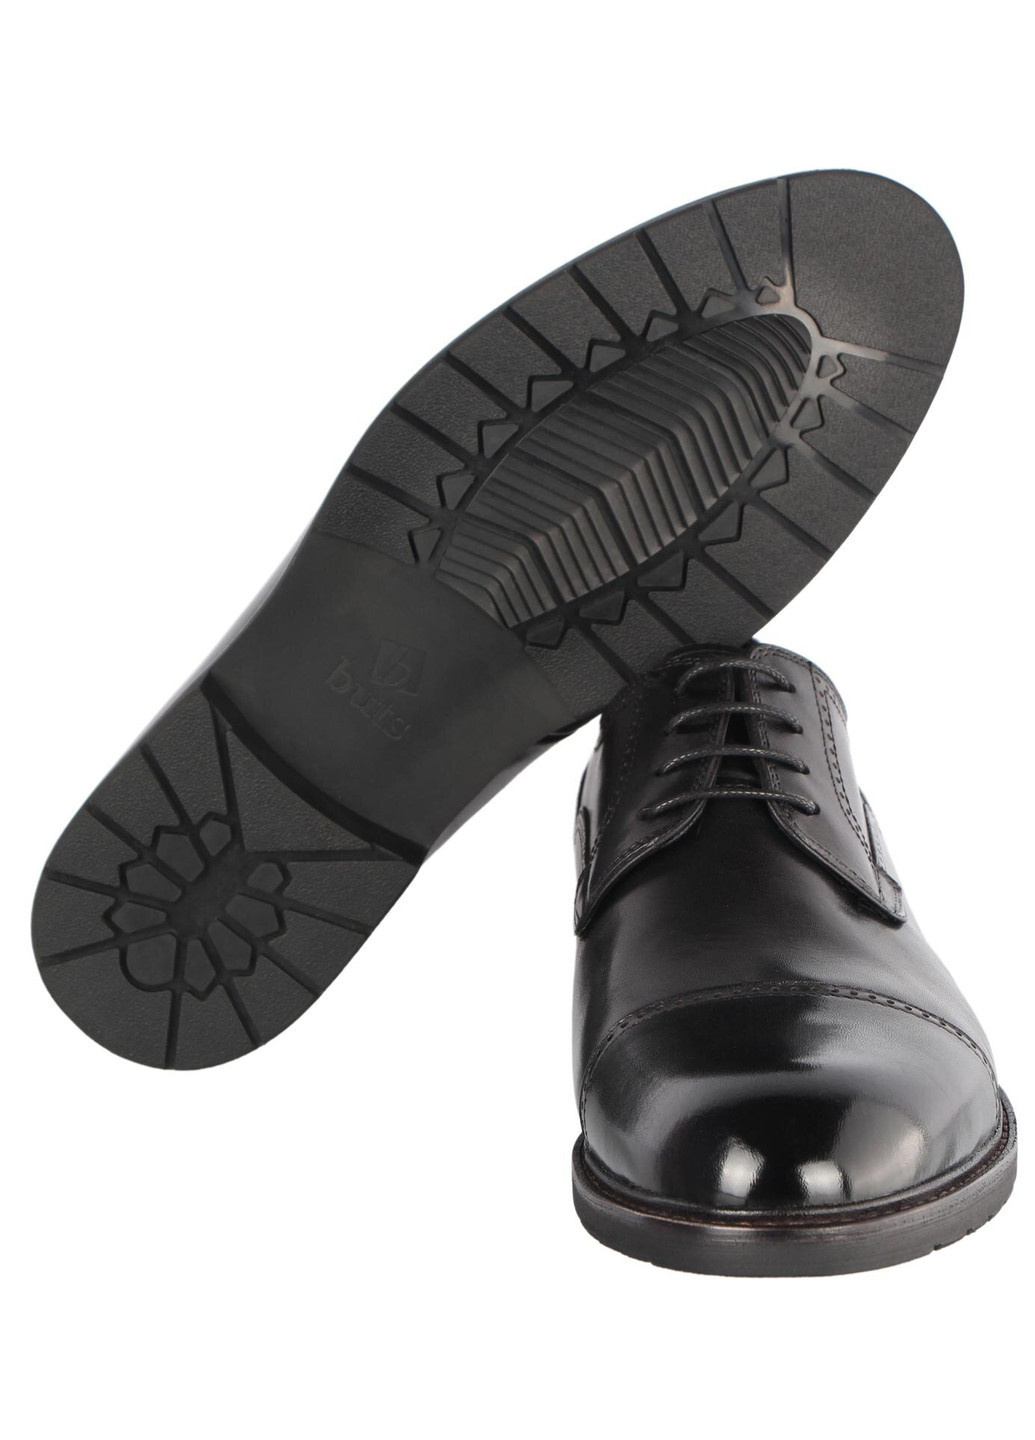 Черные мужские классические туфли 196417 Buts на шнурках